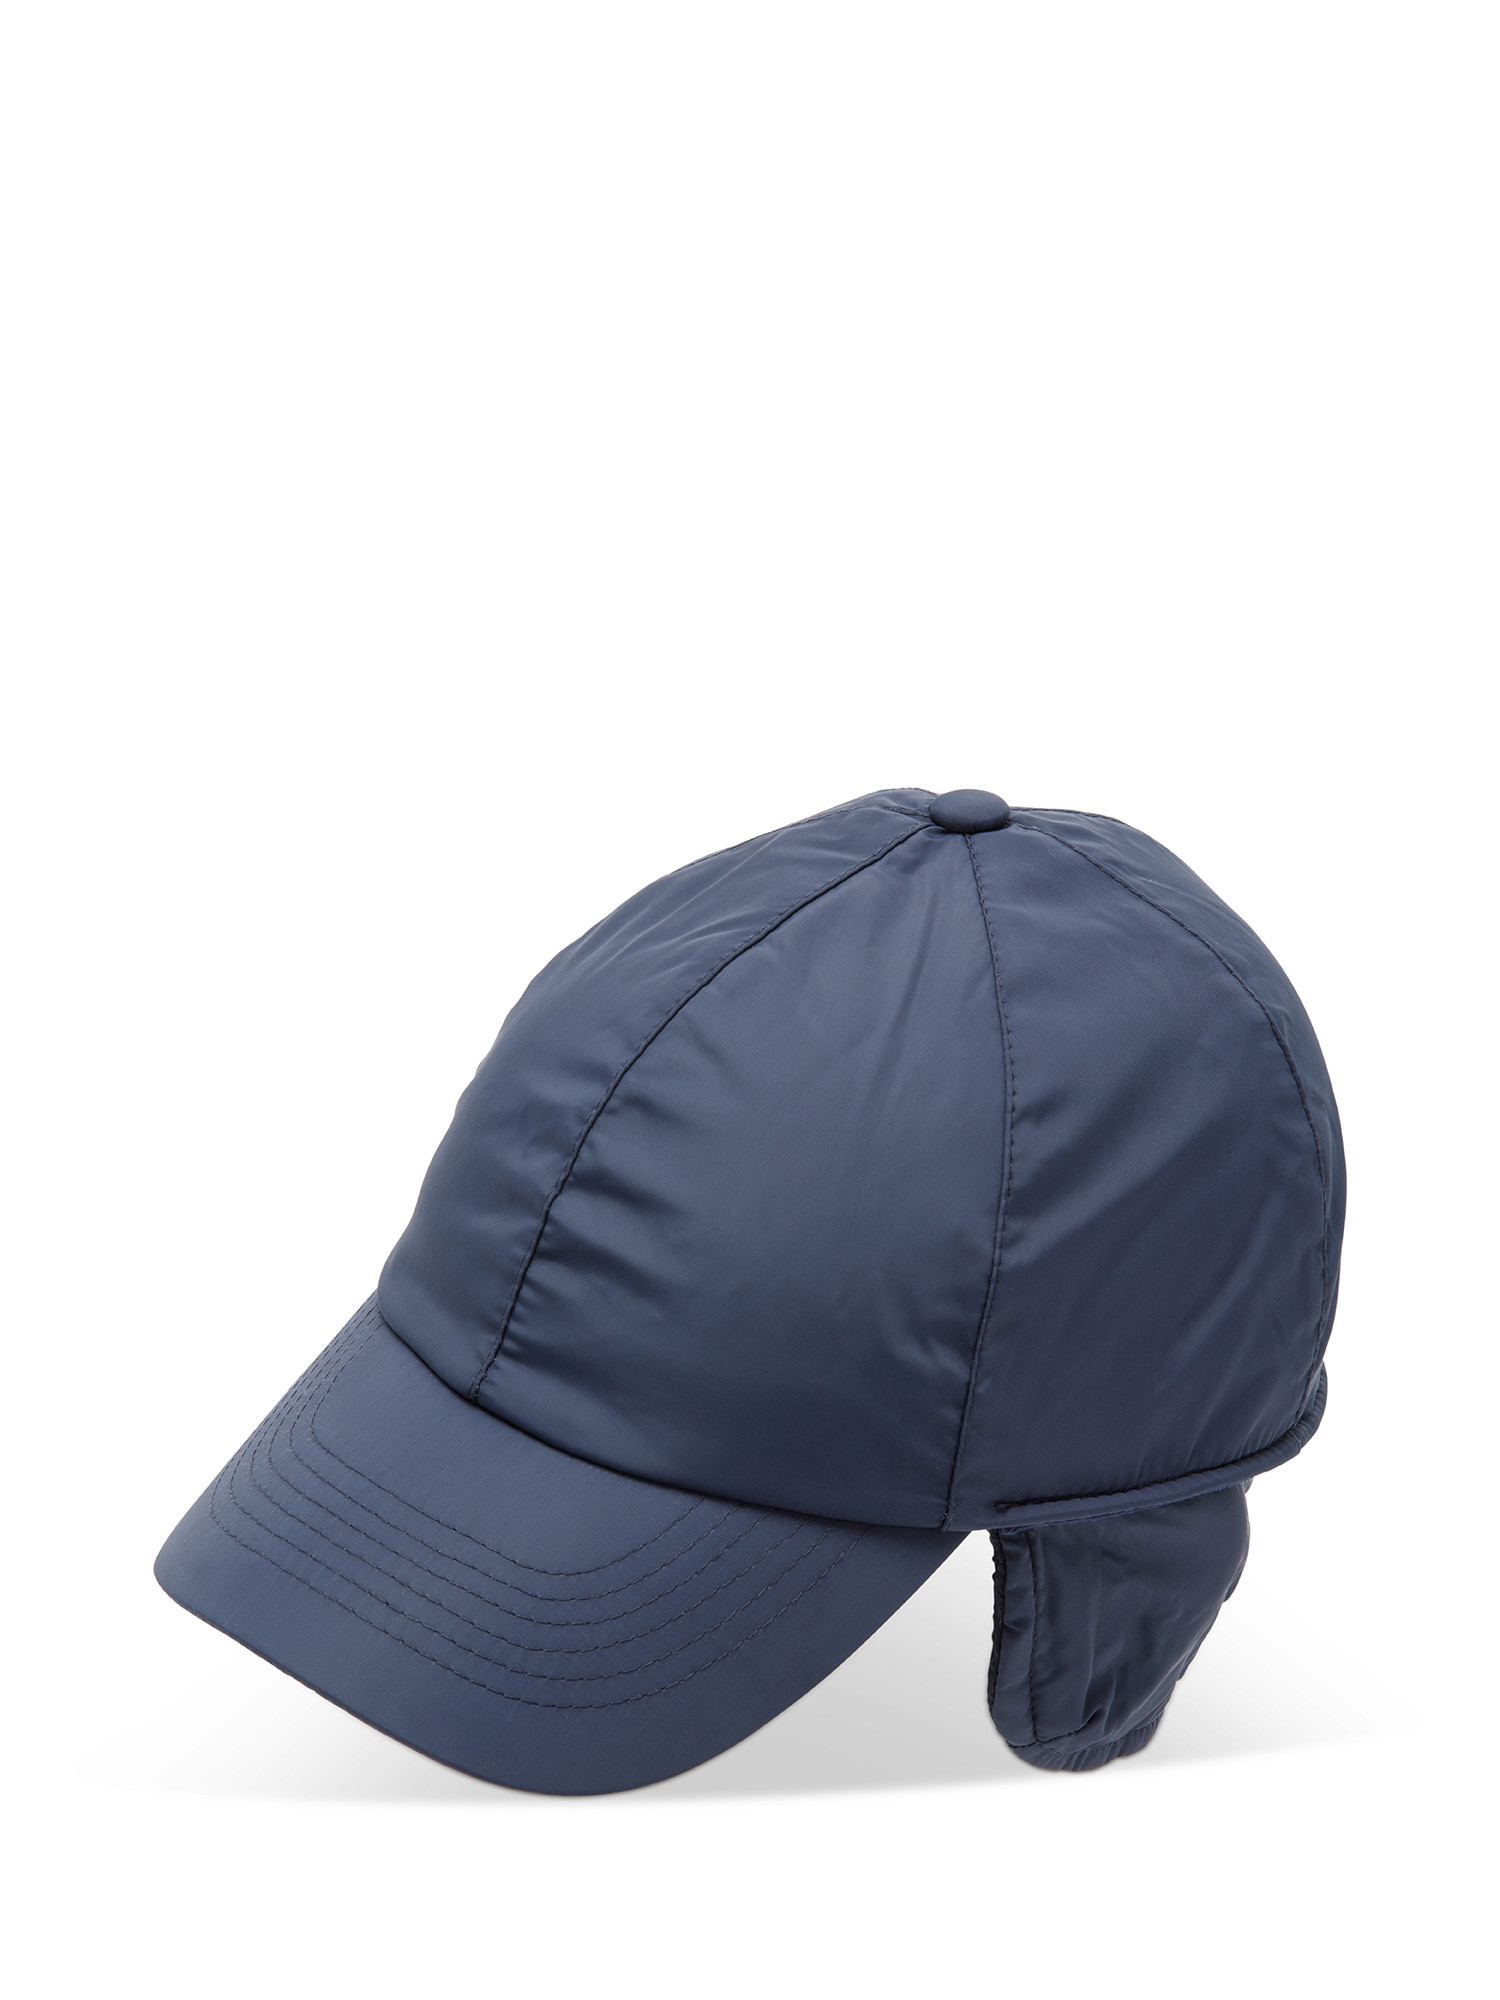 Luca D'Altieri - Nylon cap, Dark Blue, large image number 0